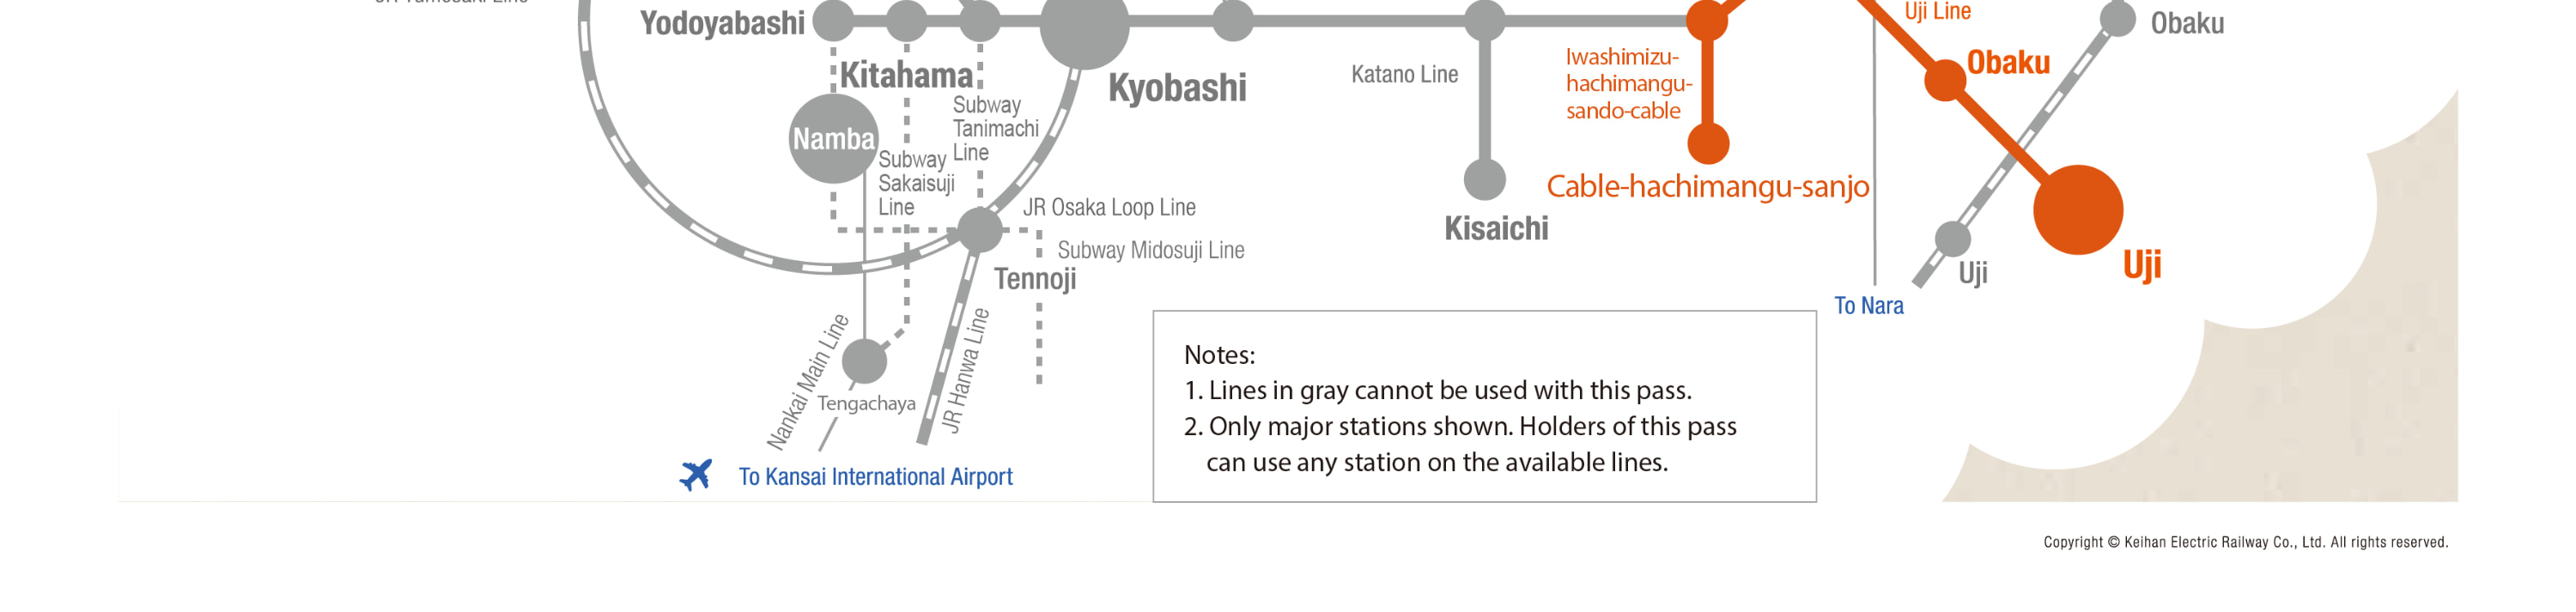 京都觀光乘車券適用區域